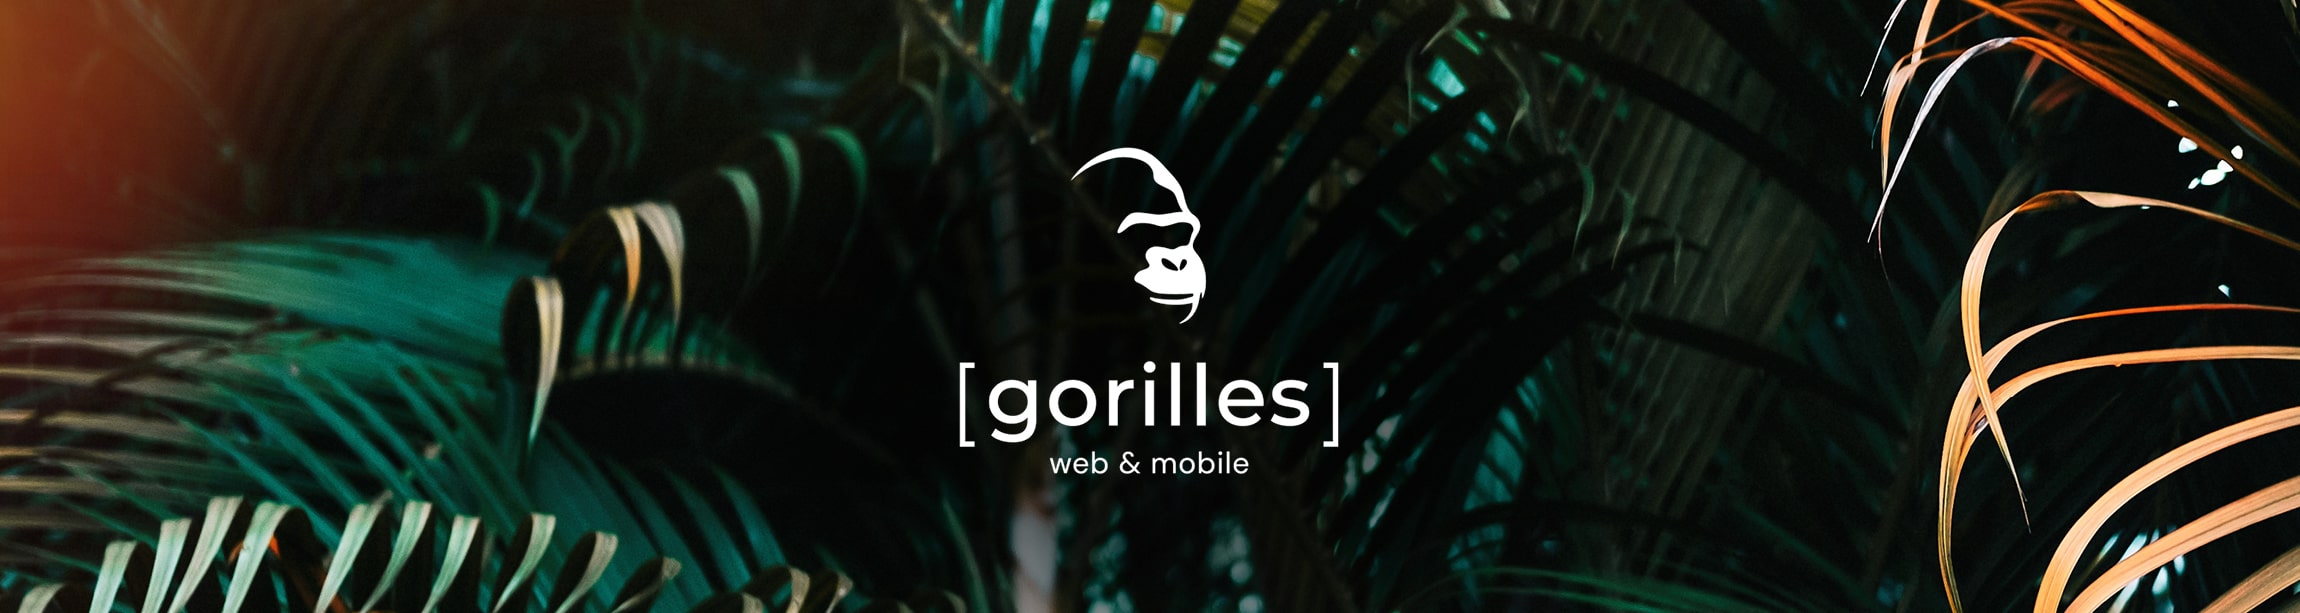 Logo Gorilles sur visuel de jungle